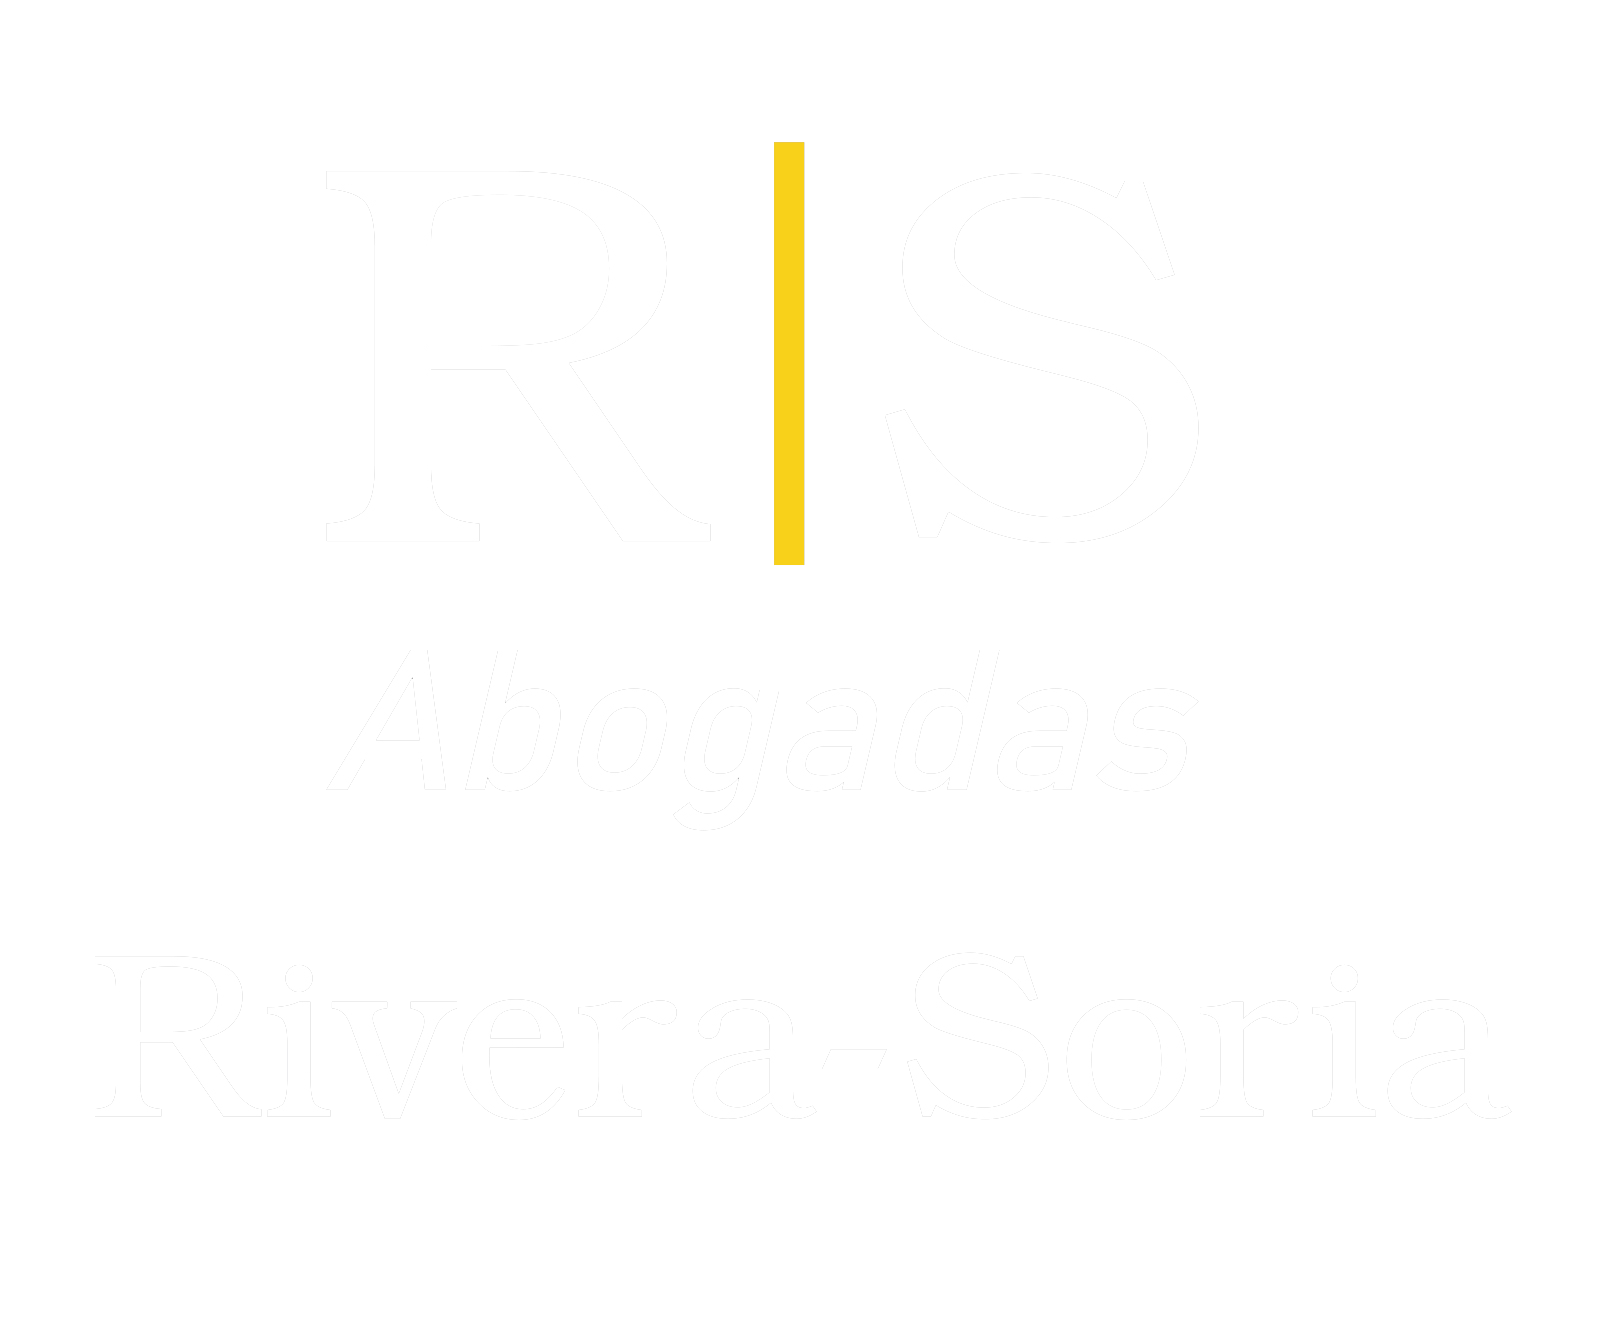 Rivera y Soria Abogadas - Despacho de Derecho Penal, Derecho Civil y Derecho de Familia